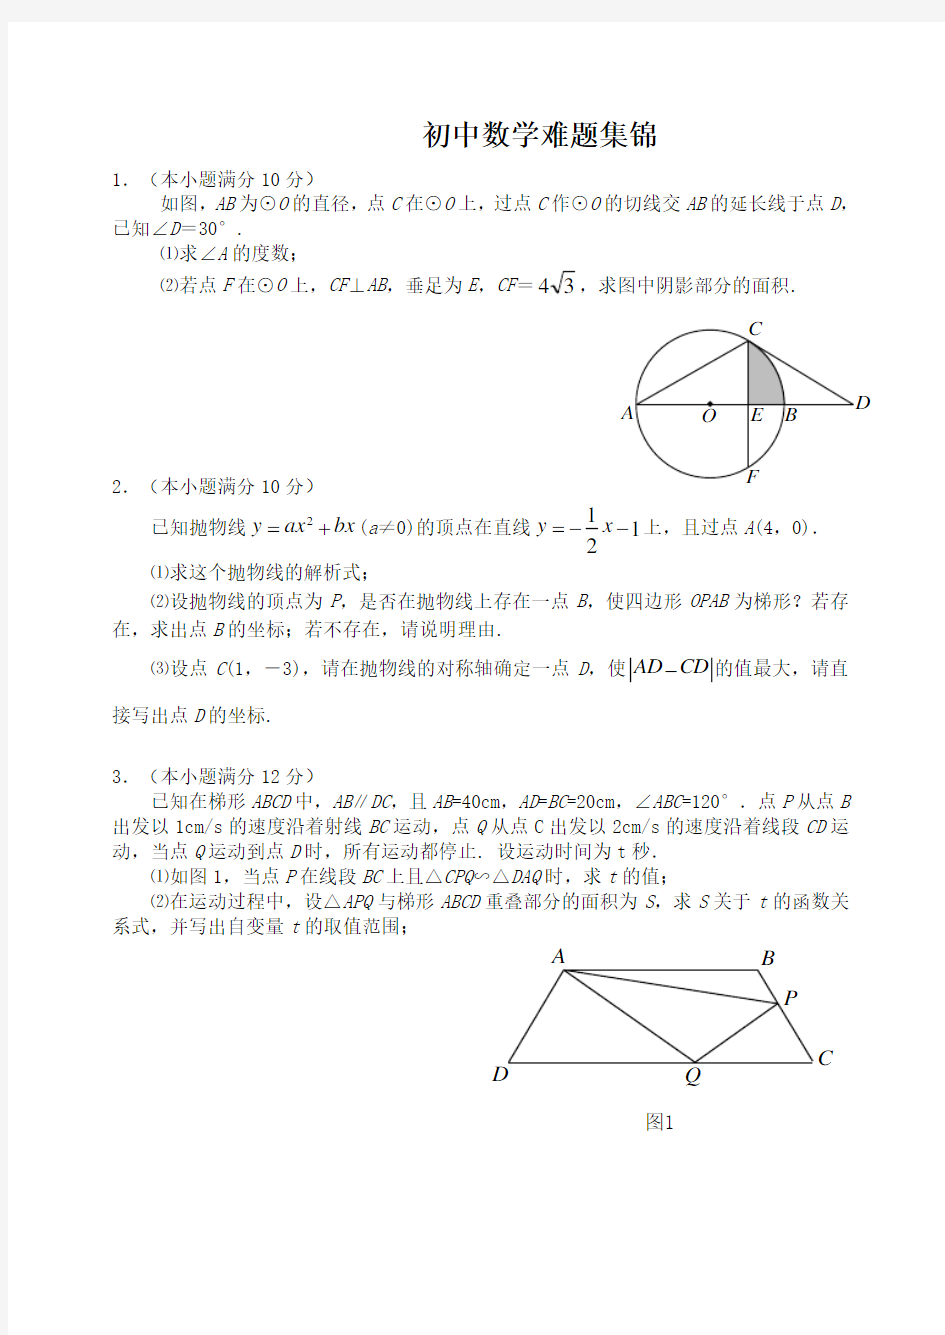 初三数学难题集锦 (1)